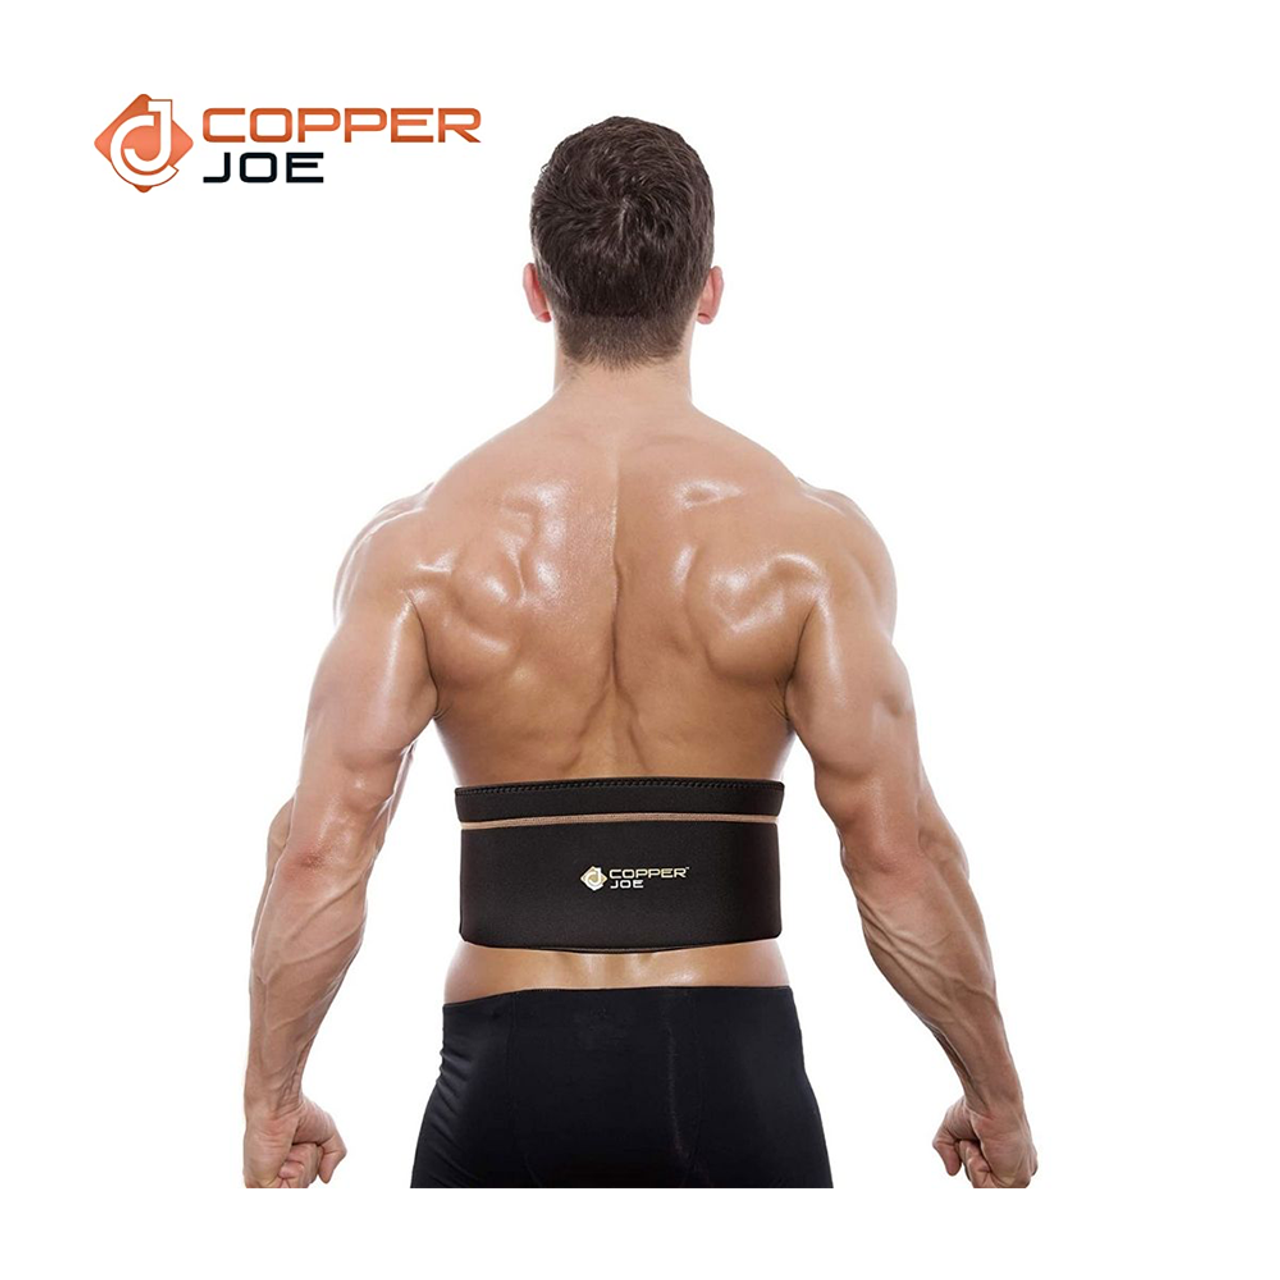 Copper Joe® Copper-Infused Lower Back Support Brace